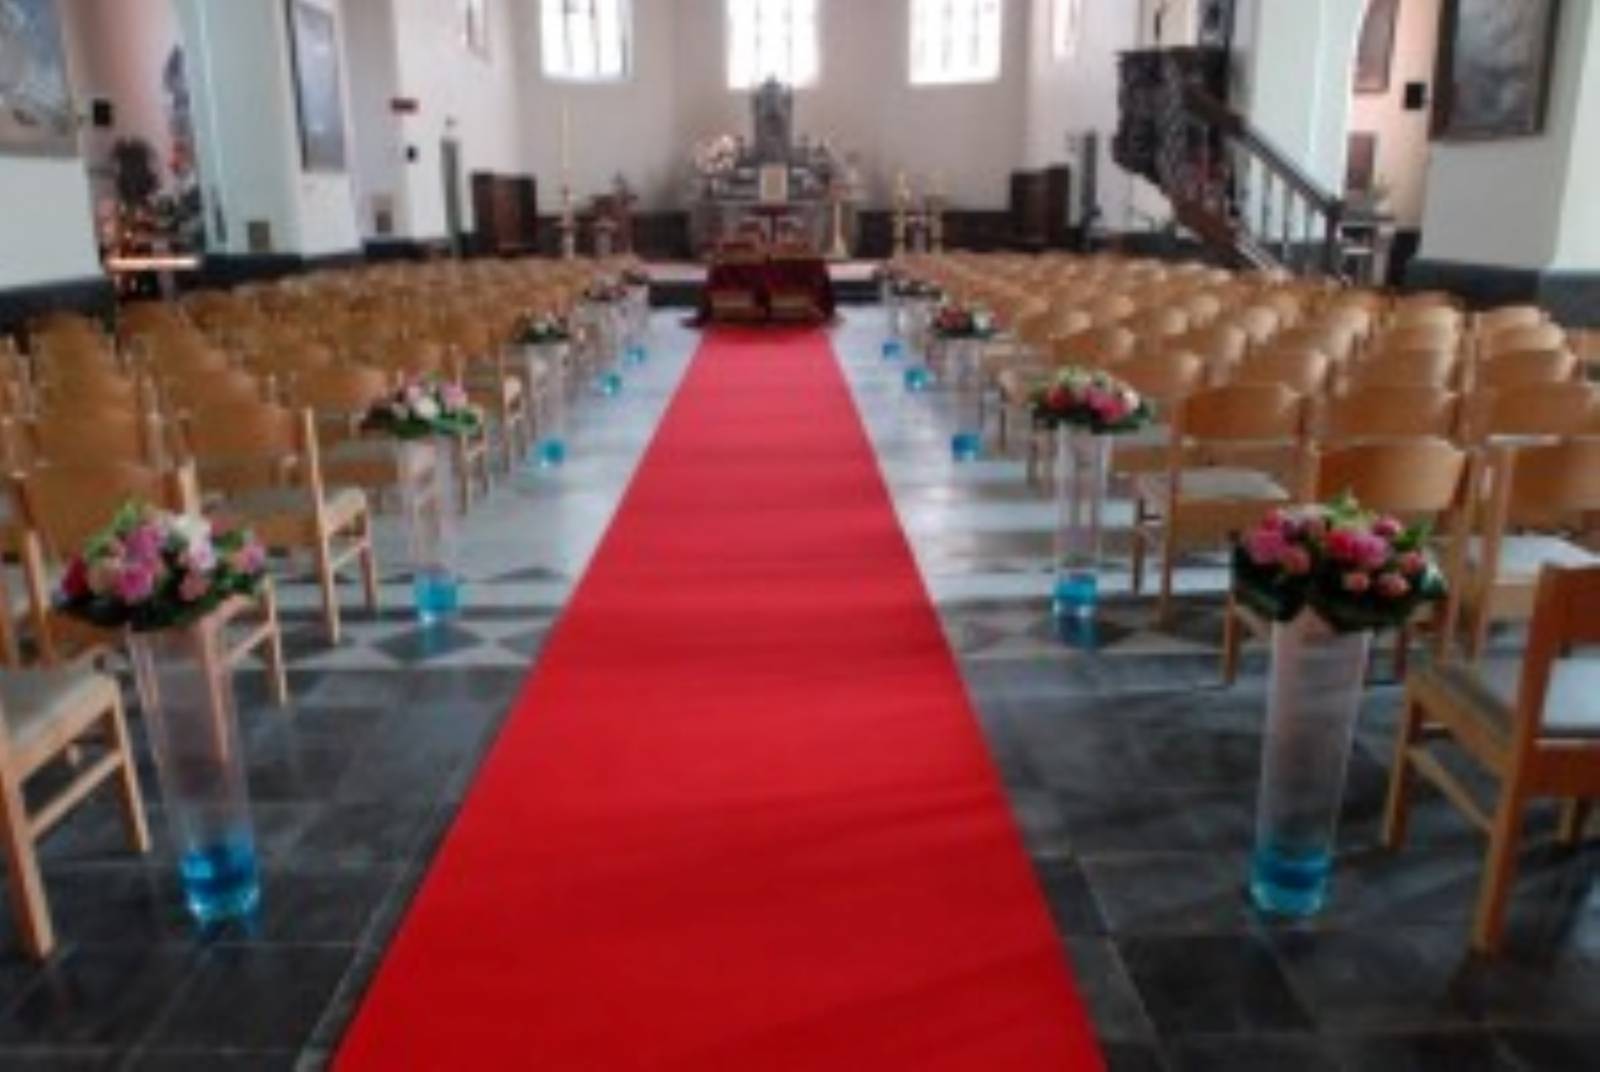 House of Weddings Ceremonie Schoonbaert Trouwvervoer Rode Loper Ceremoniemeester West-Vlaanderen (15)